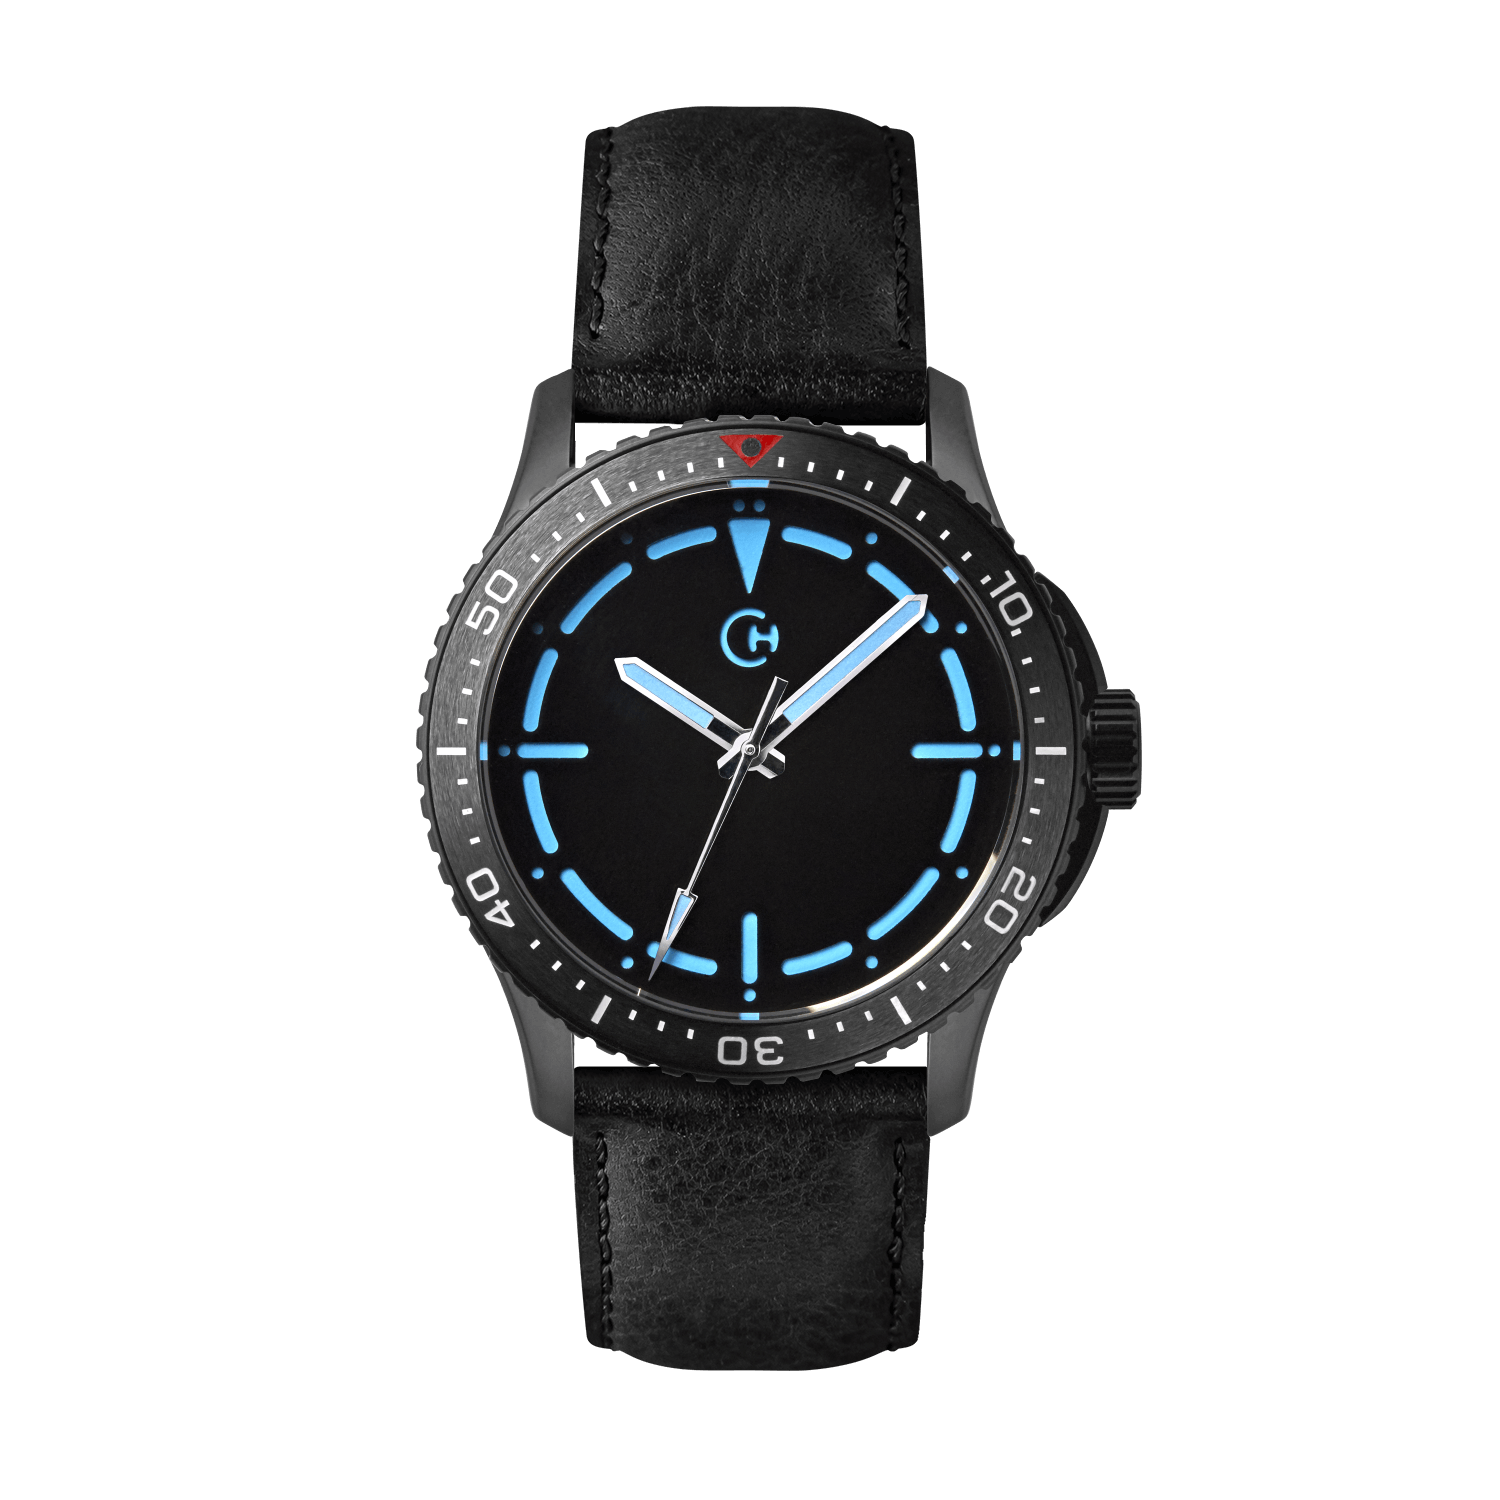 SeaQuest Dive černý kožený řemínek, 22mm, rychloupínací stěžejka, potápěčské hodinky Chronotechna modrý číselník, DLC pouzdro